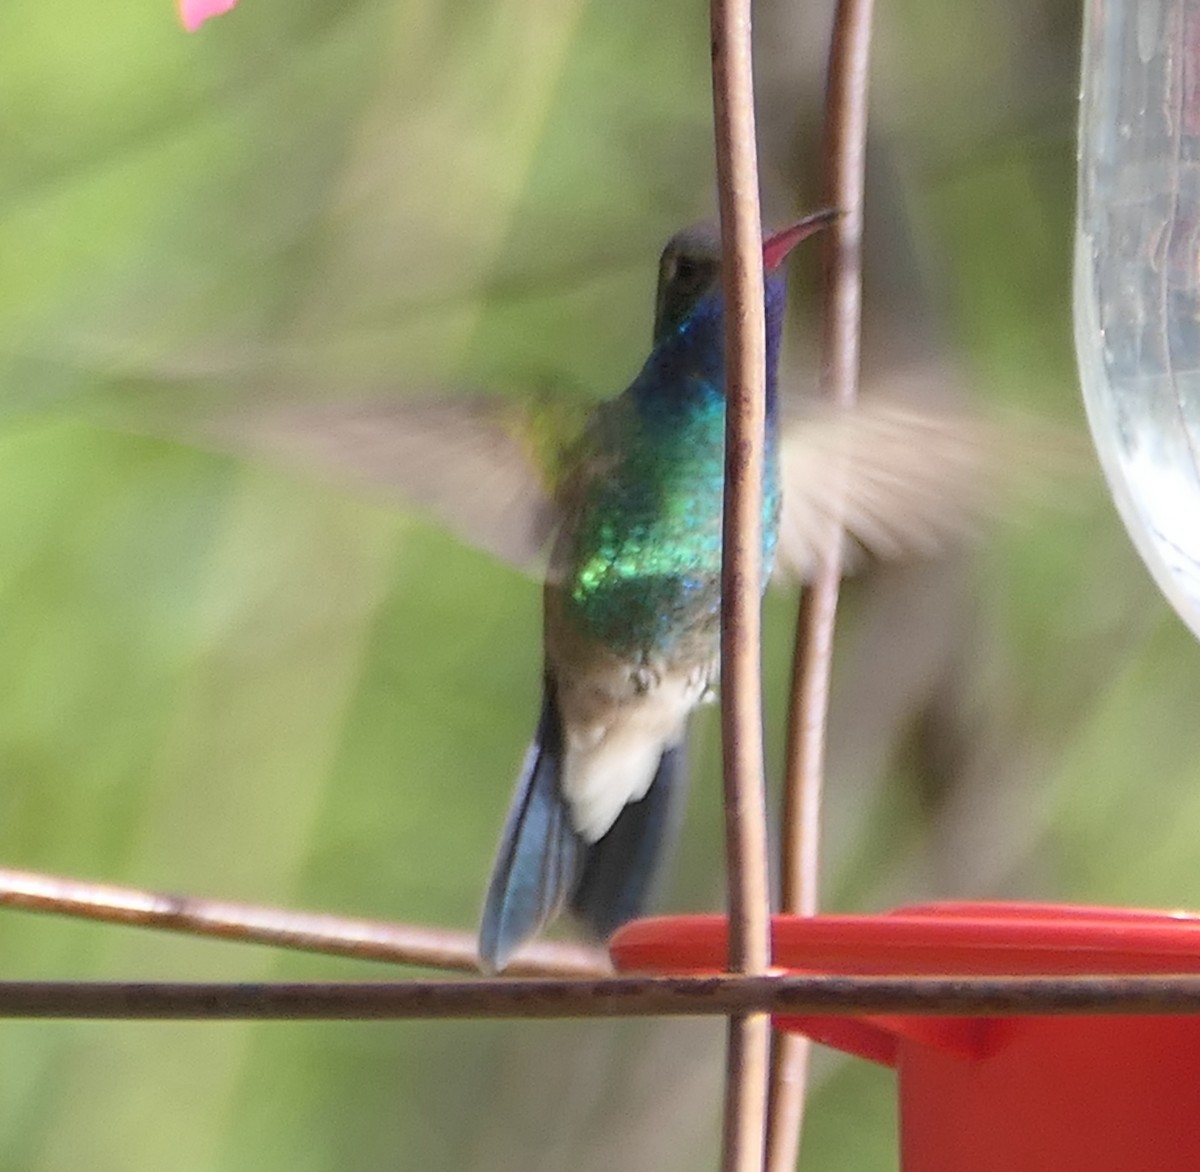 Broad-billed Hummingbird - Melanie Barnett